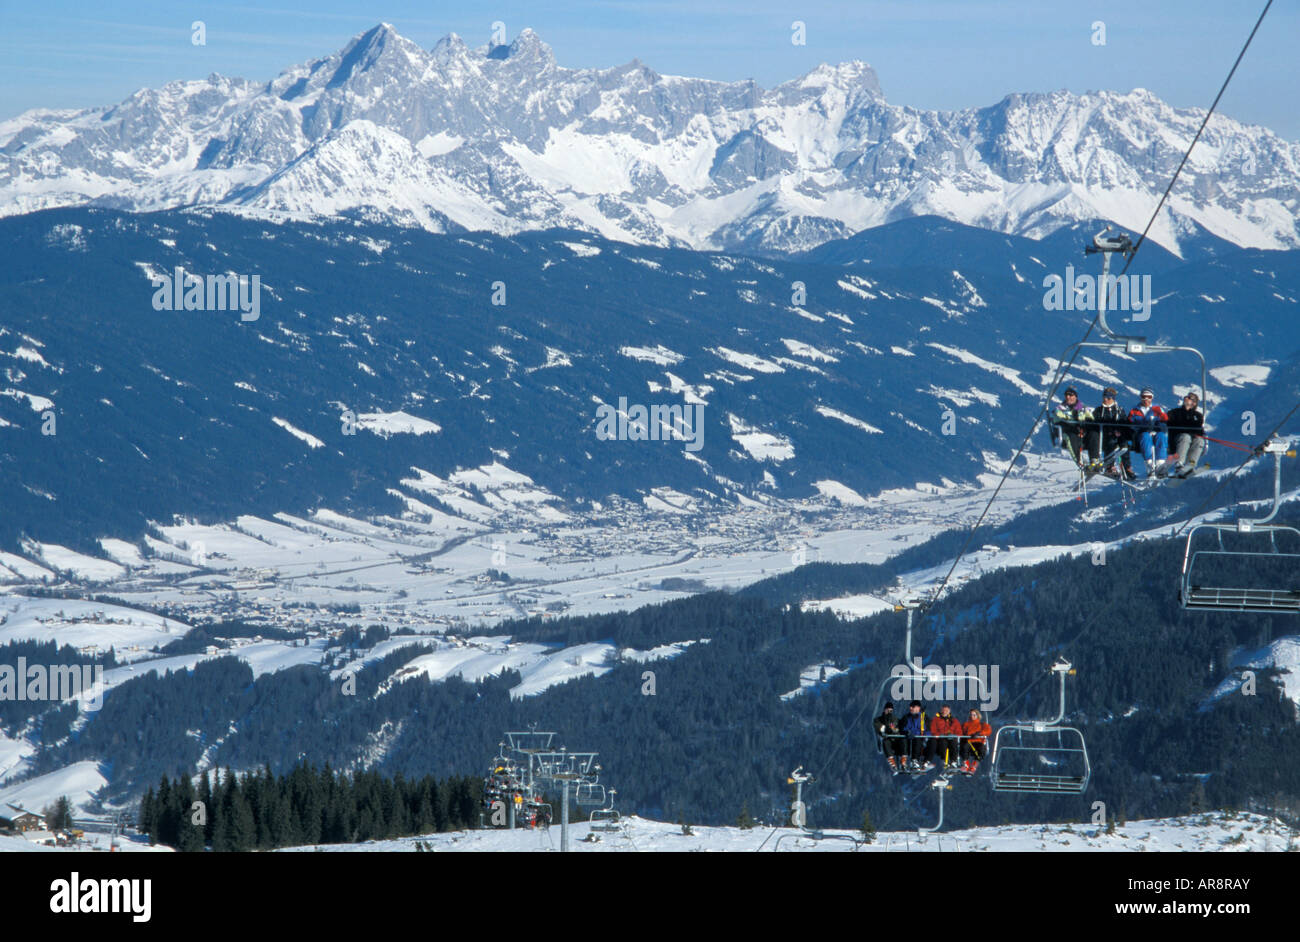 Vue panoramique de la station de ski autrichienne de Flachau avec le télésiège de quatre personnes à l'avant-plan Banque D'Images